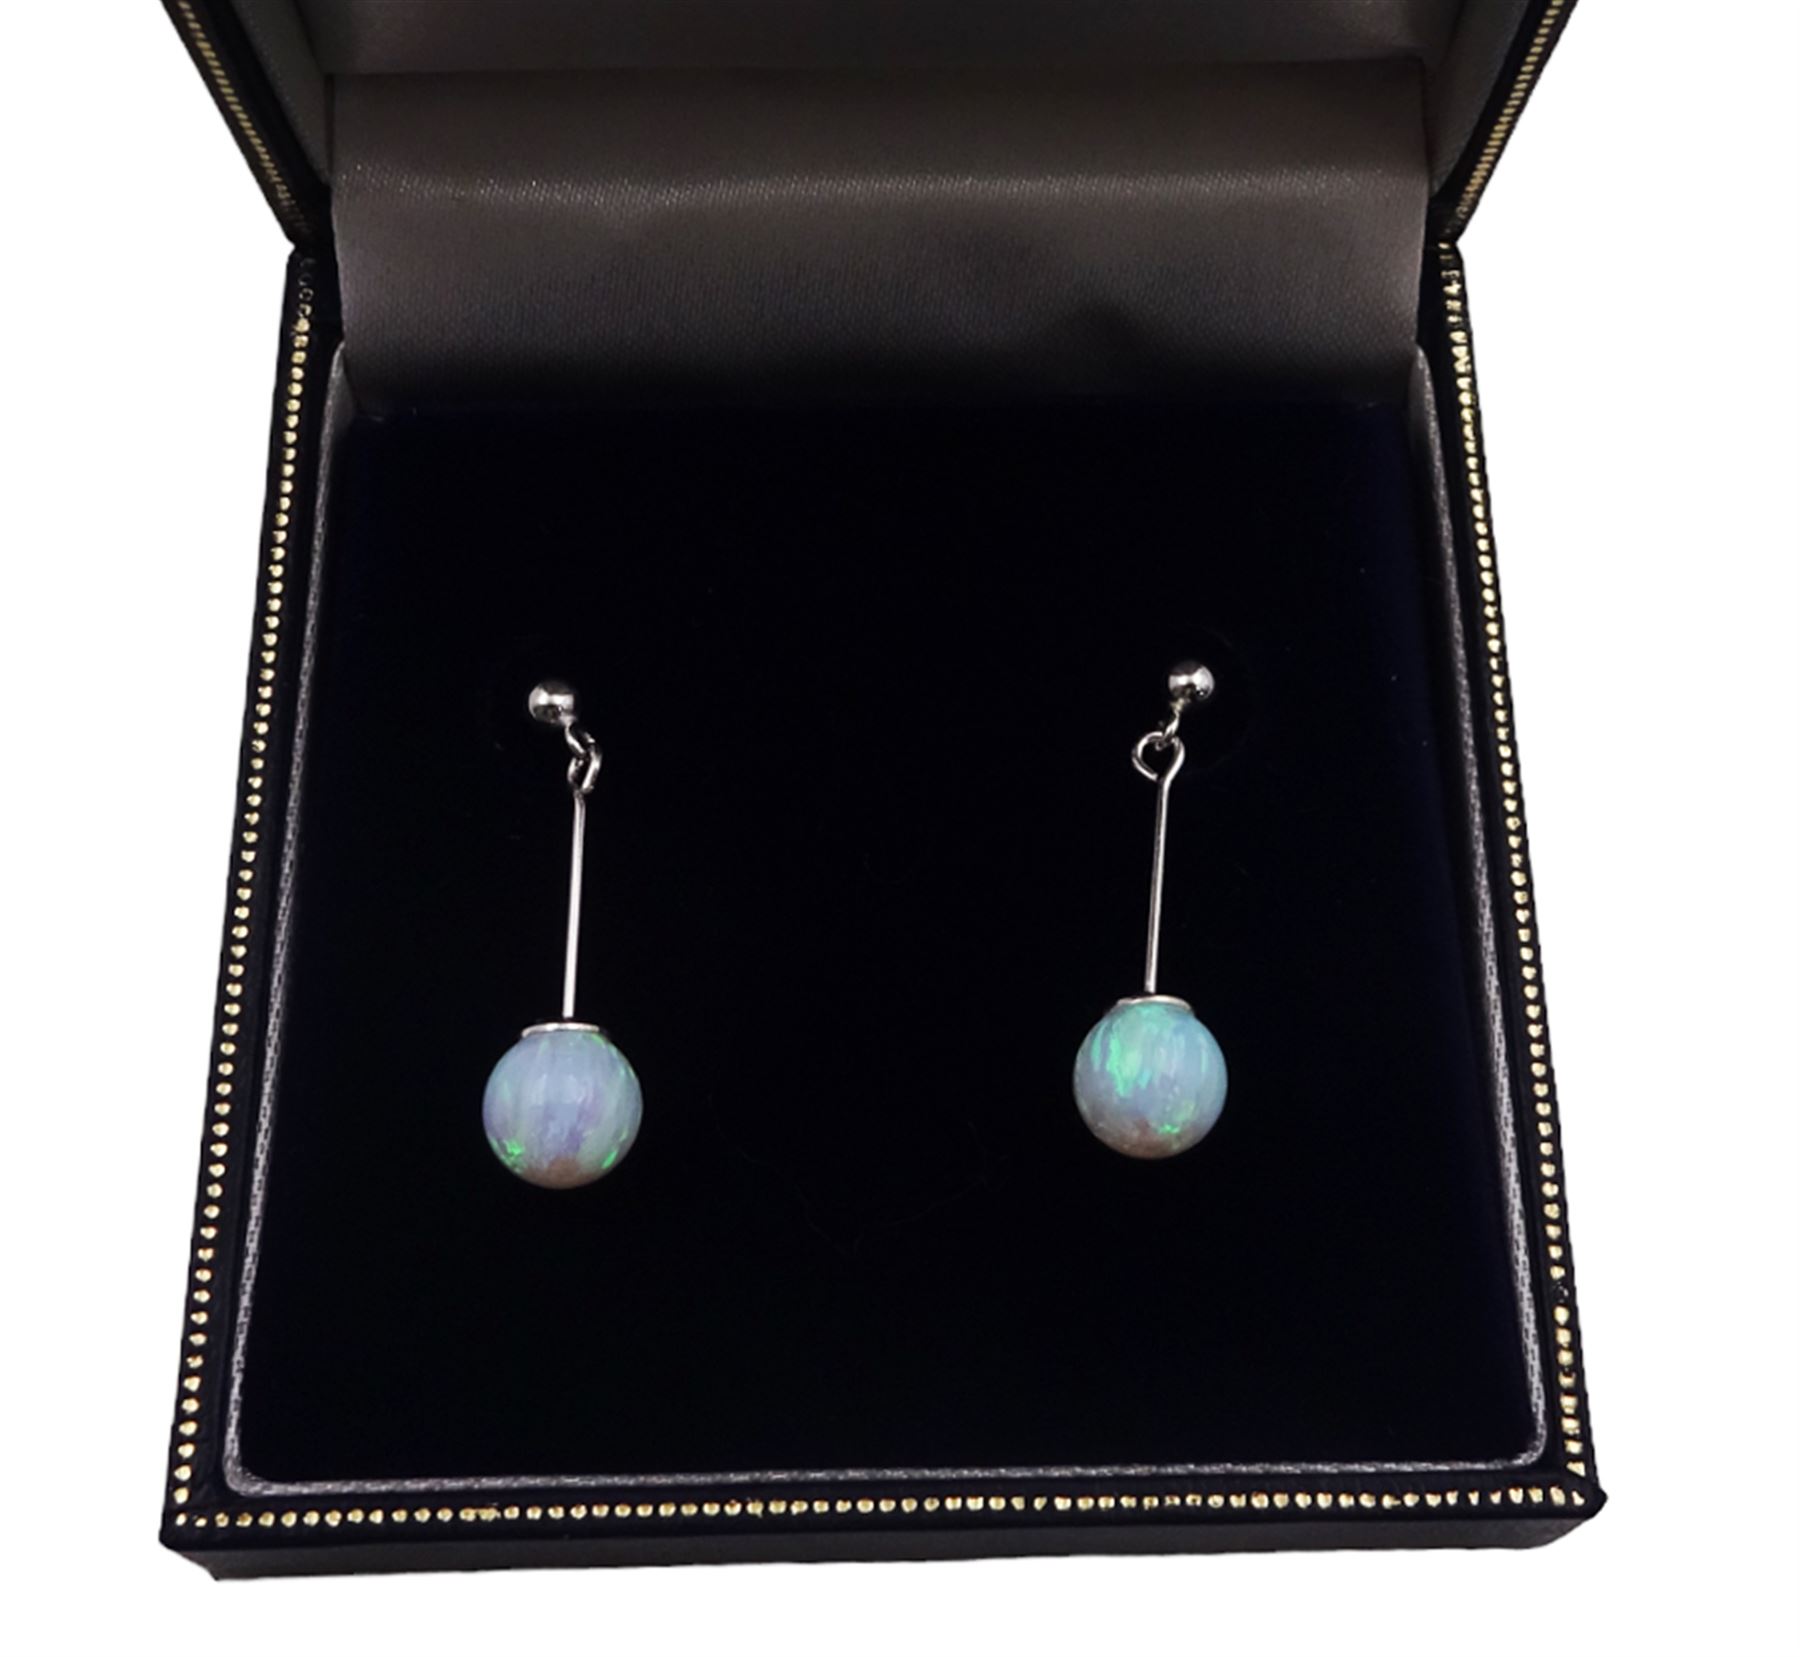 Pair of silver opal pendant stud earrings